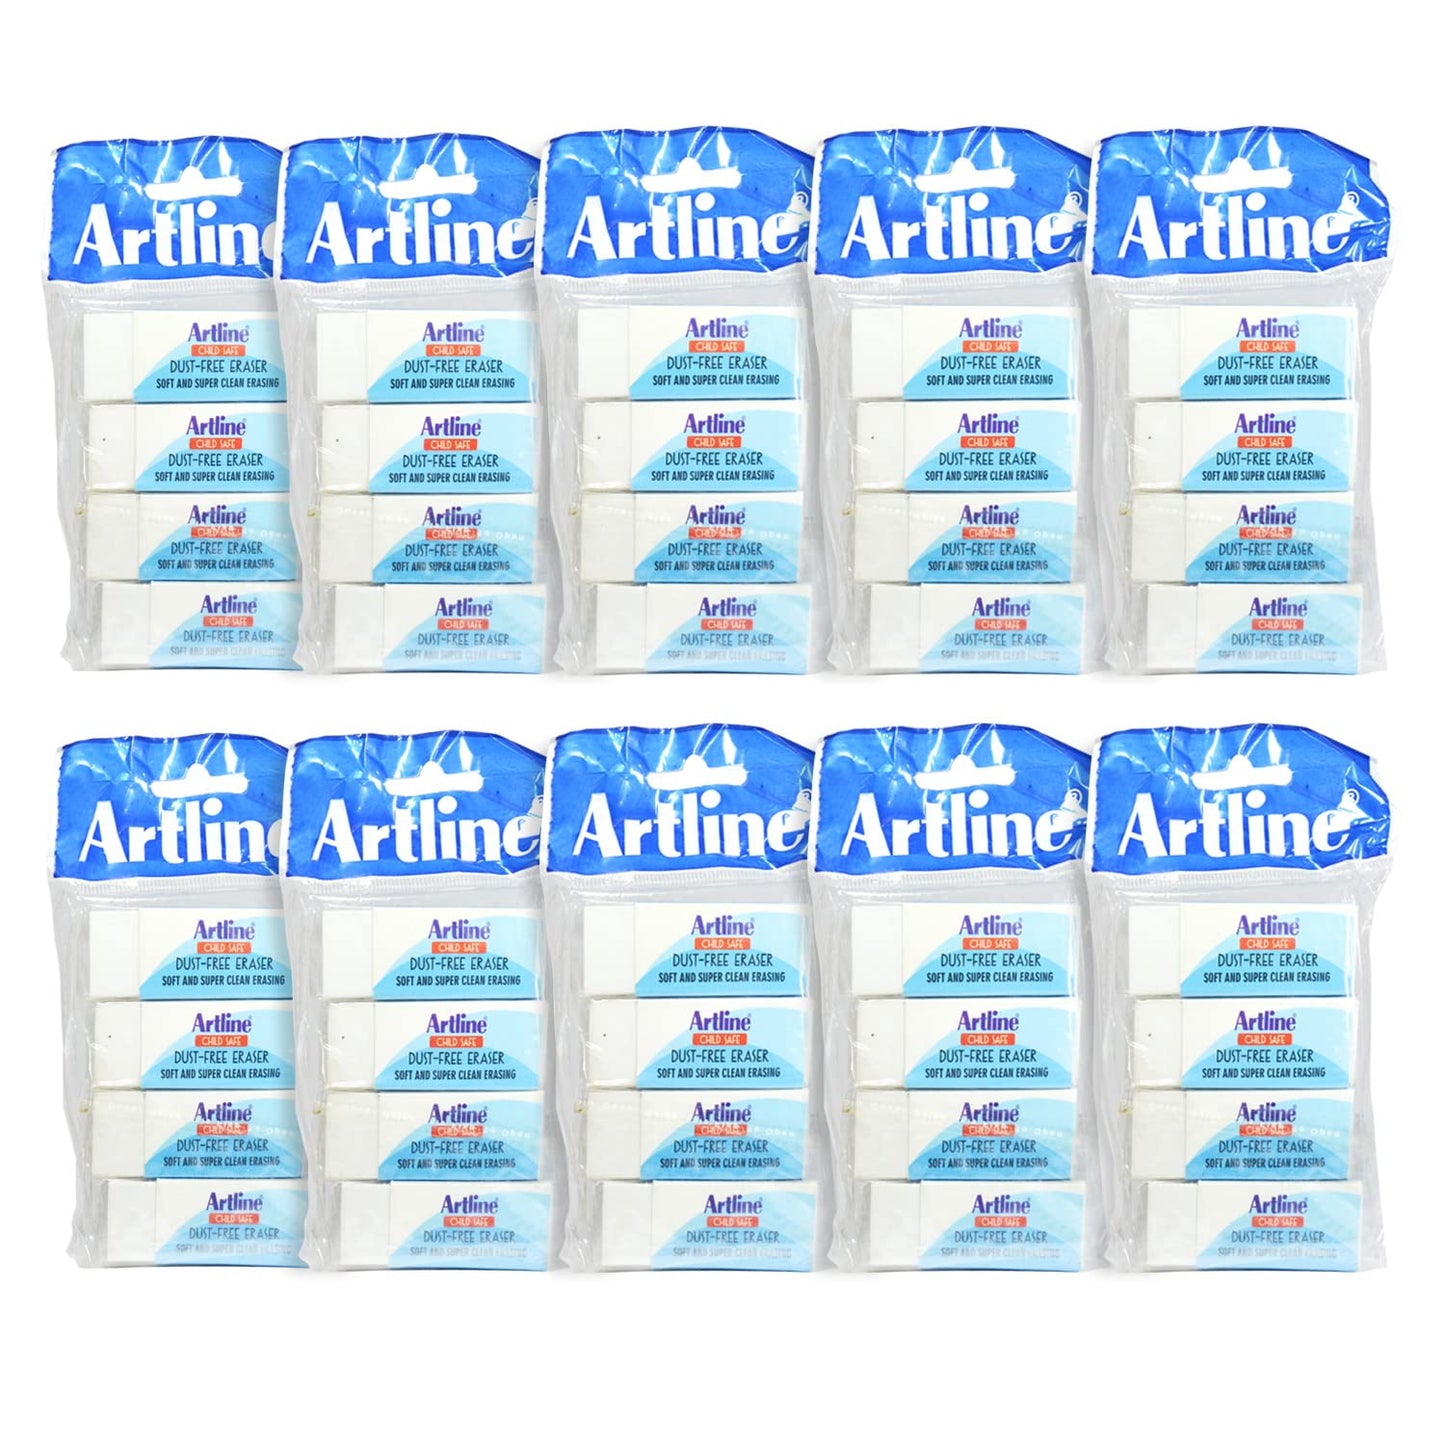 Artline Dust Free Jumbo Eraser